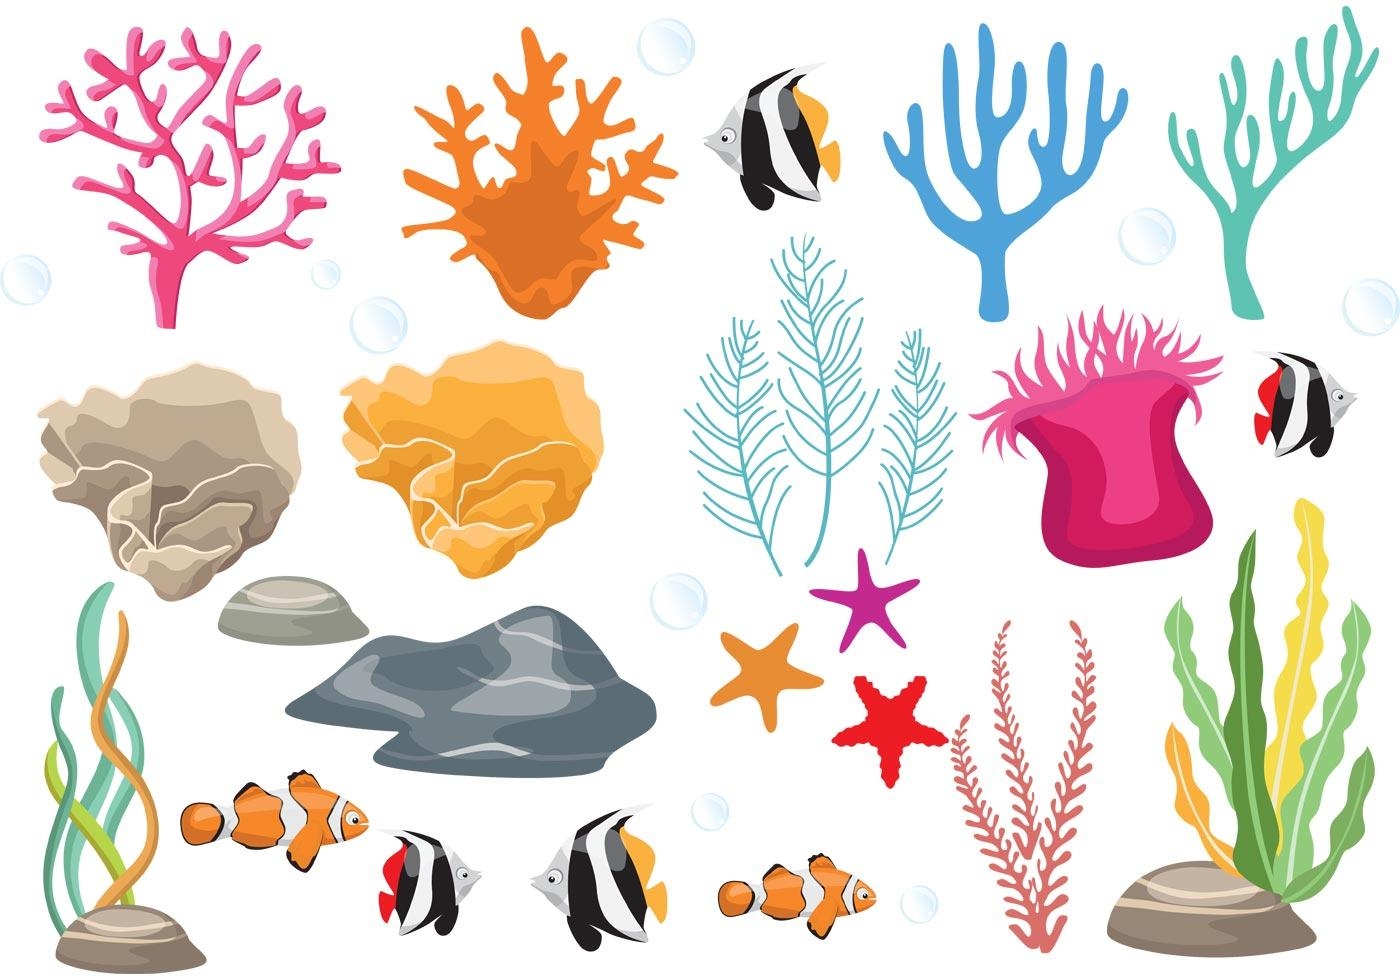 Морское дно рисунок — актиния и кораллы